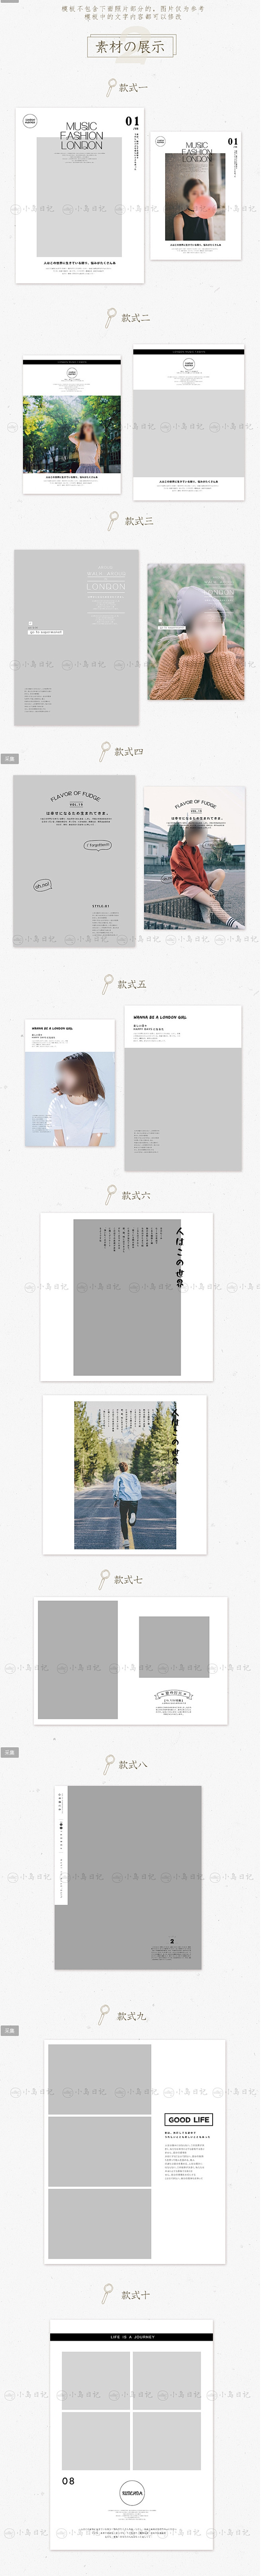 D29原创日系模板字体排版psd写真杂志...